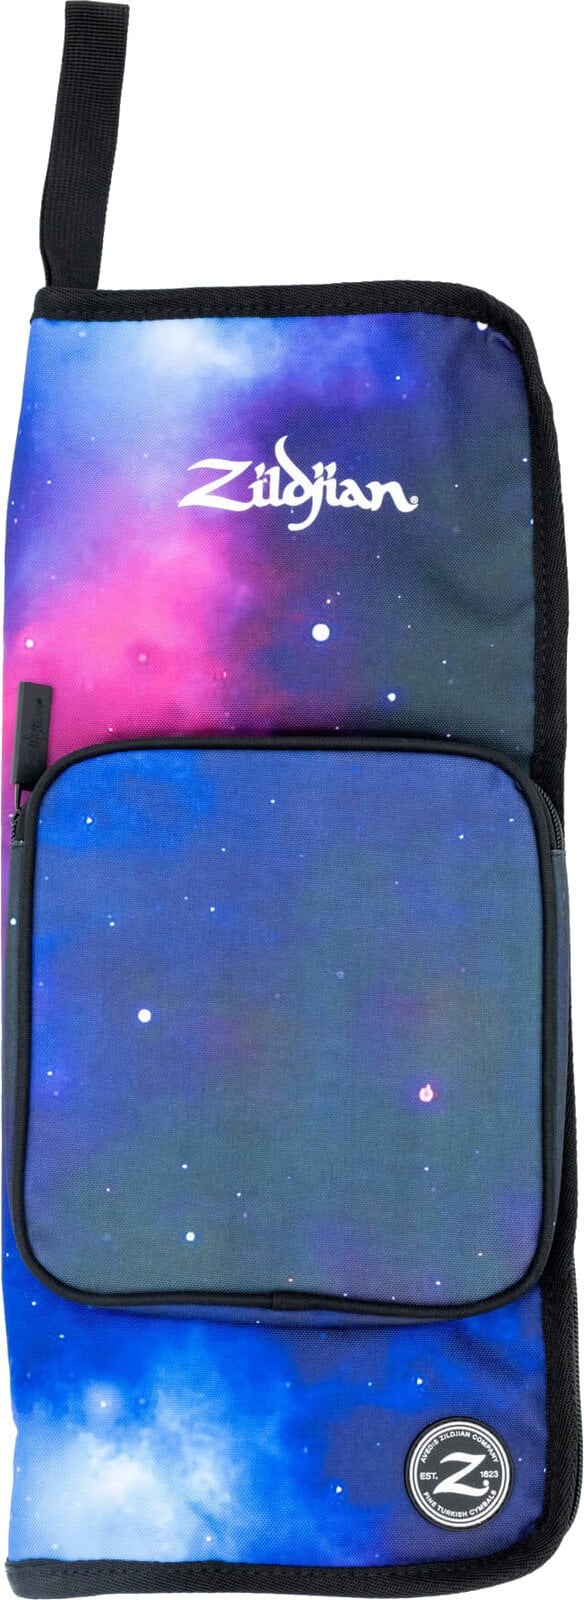 Trumstocksväska Zildjian Student Stick Bag Purple Galaxy Trumstocksväska